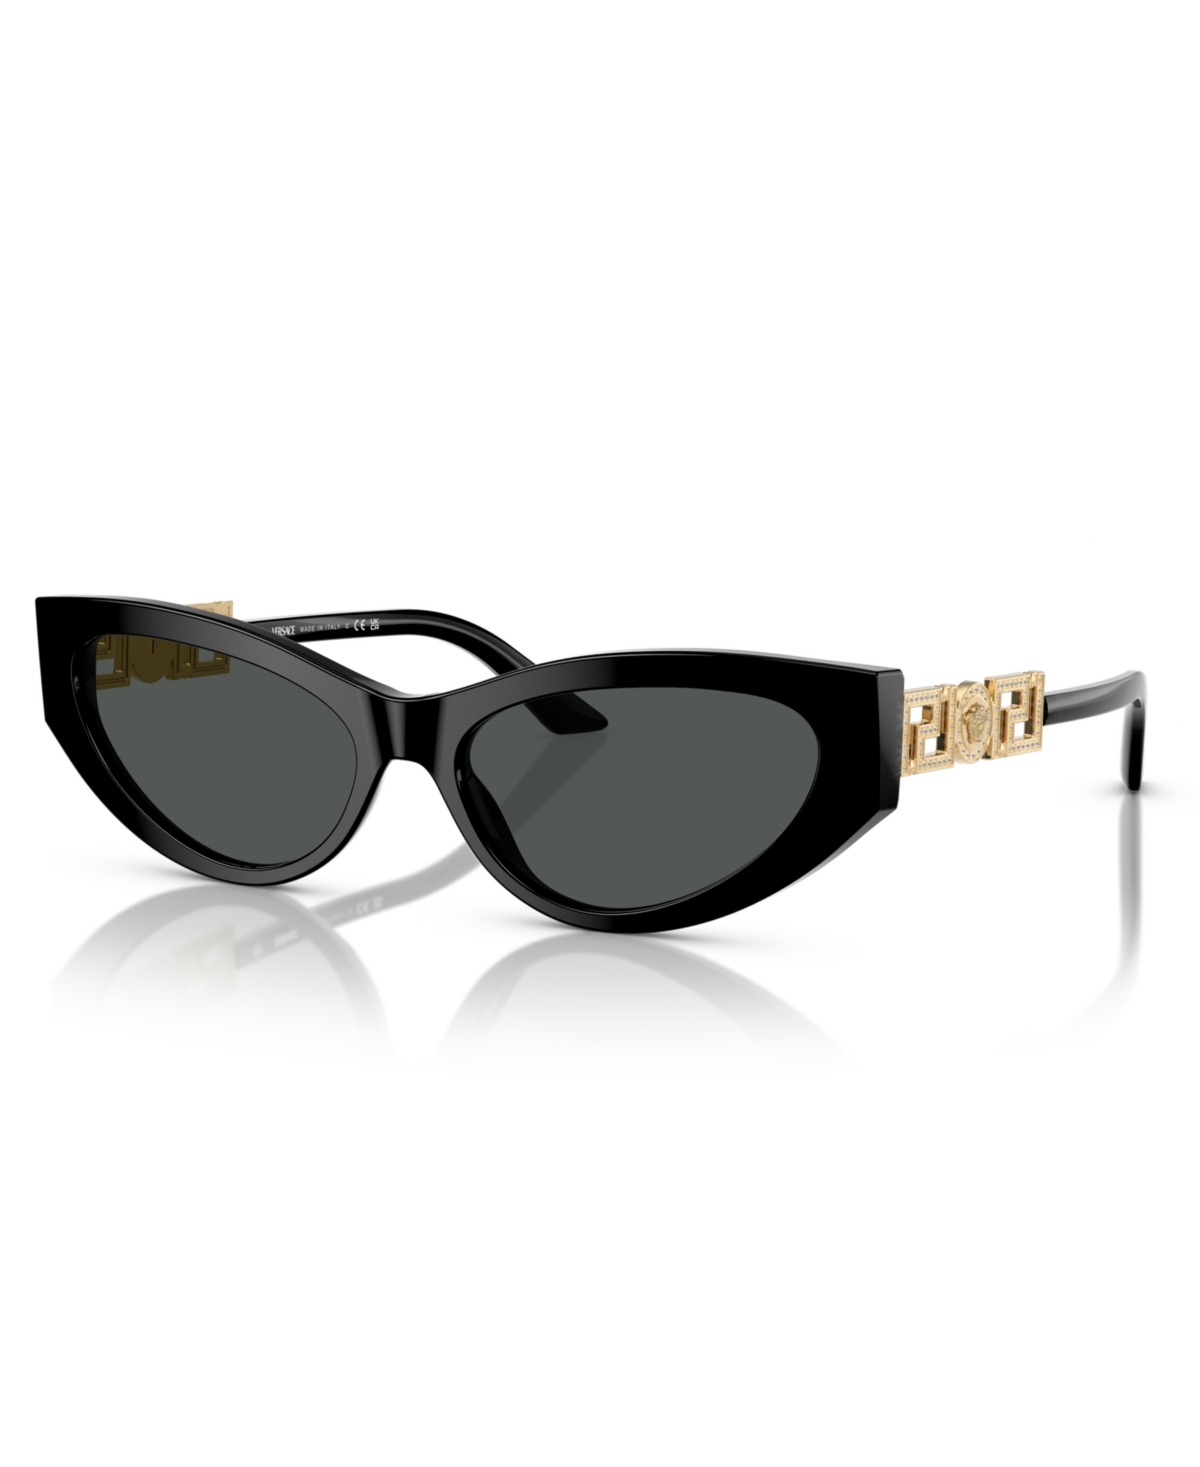 Women's Sunglasses, Ve4470B - Black